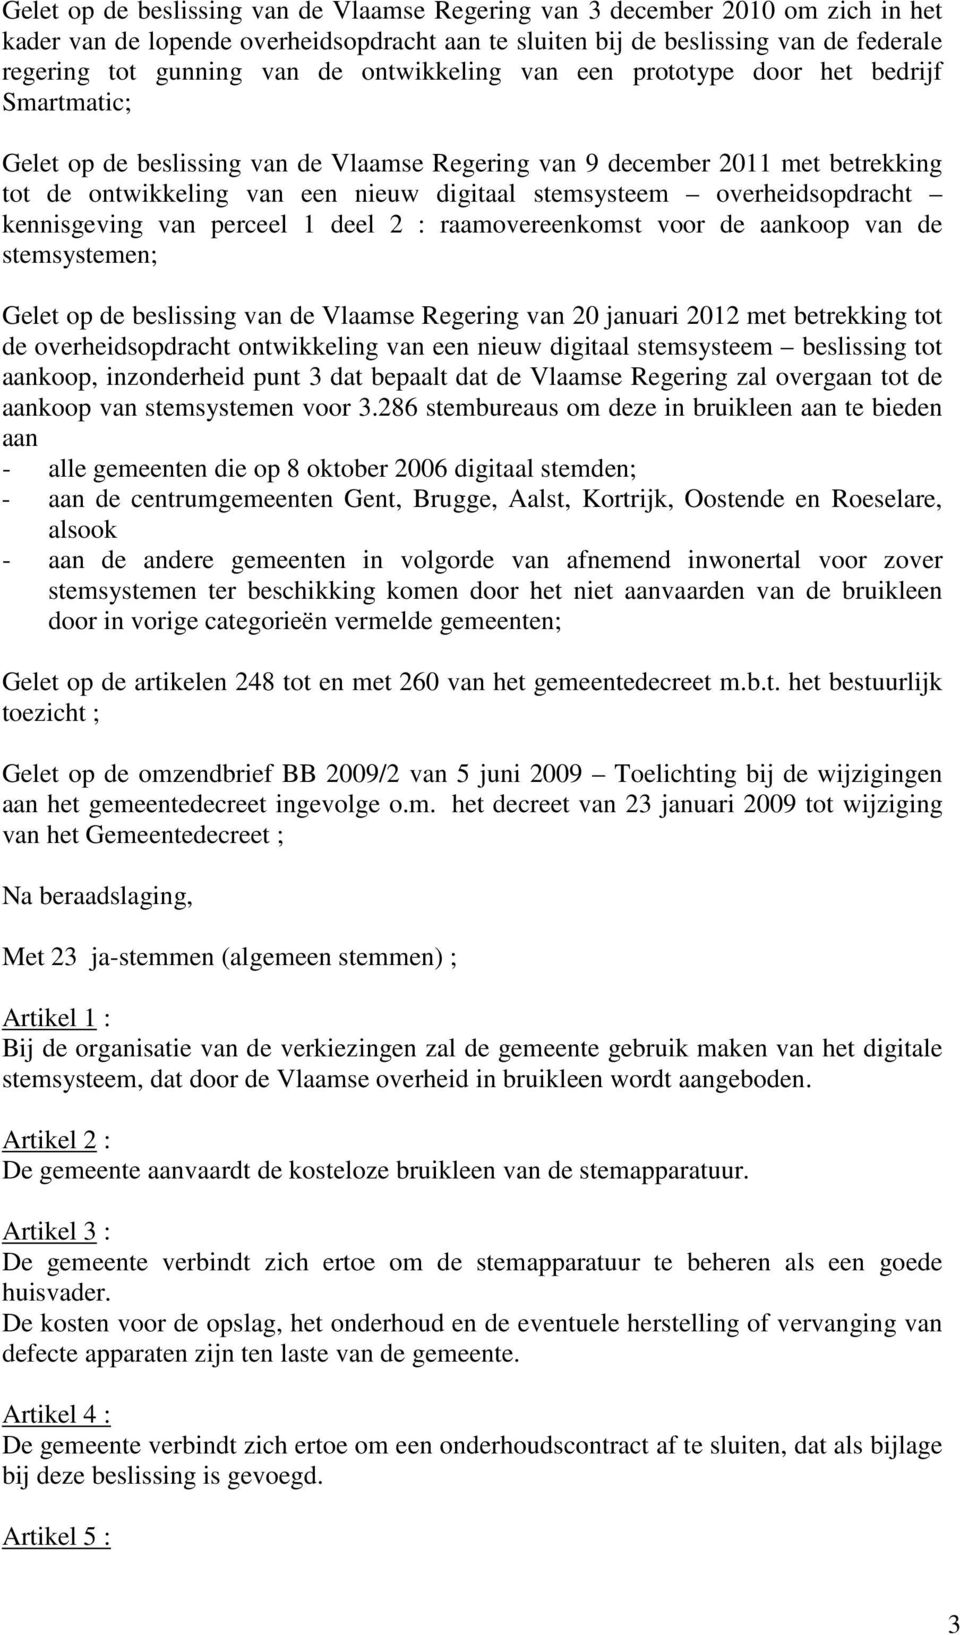 overheidsopdracht kennisgeving van perceel 1 deel 2 : raamovereenkomst voor de aankoop van de stemsystemen; Gelet op de beslissing van de Vlaamse Regering van 20 januari 2012 met betrekking tot de